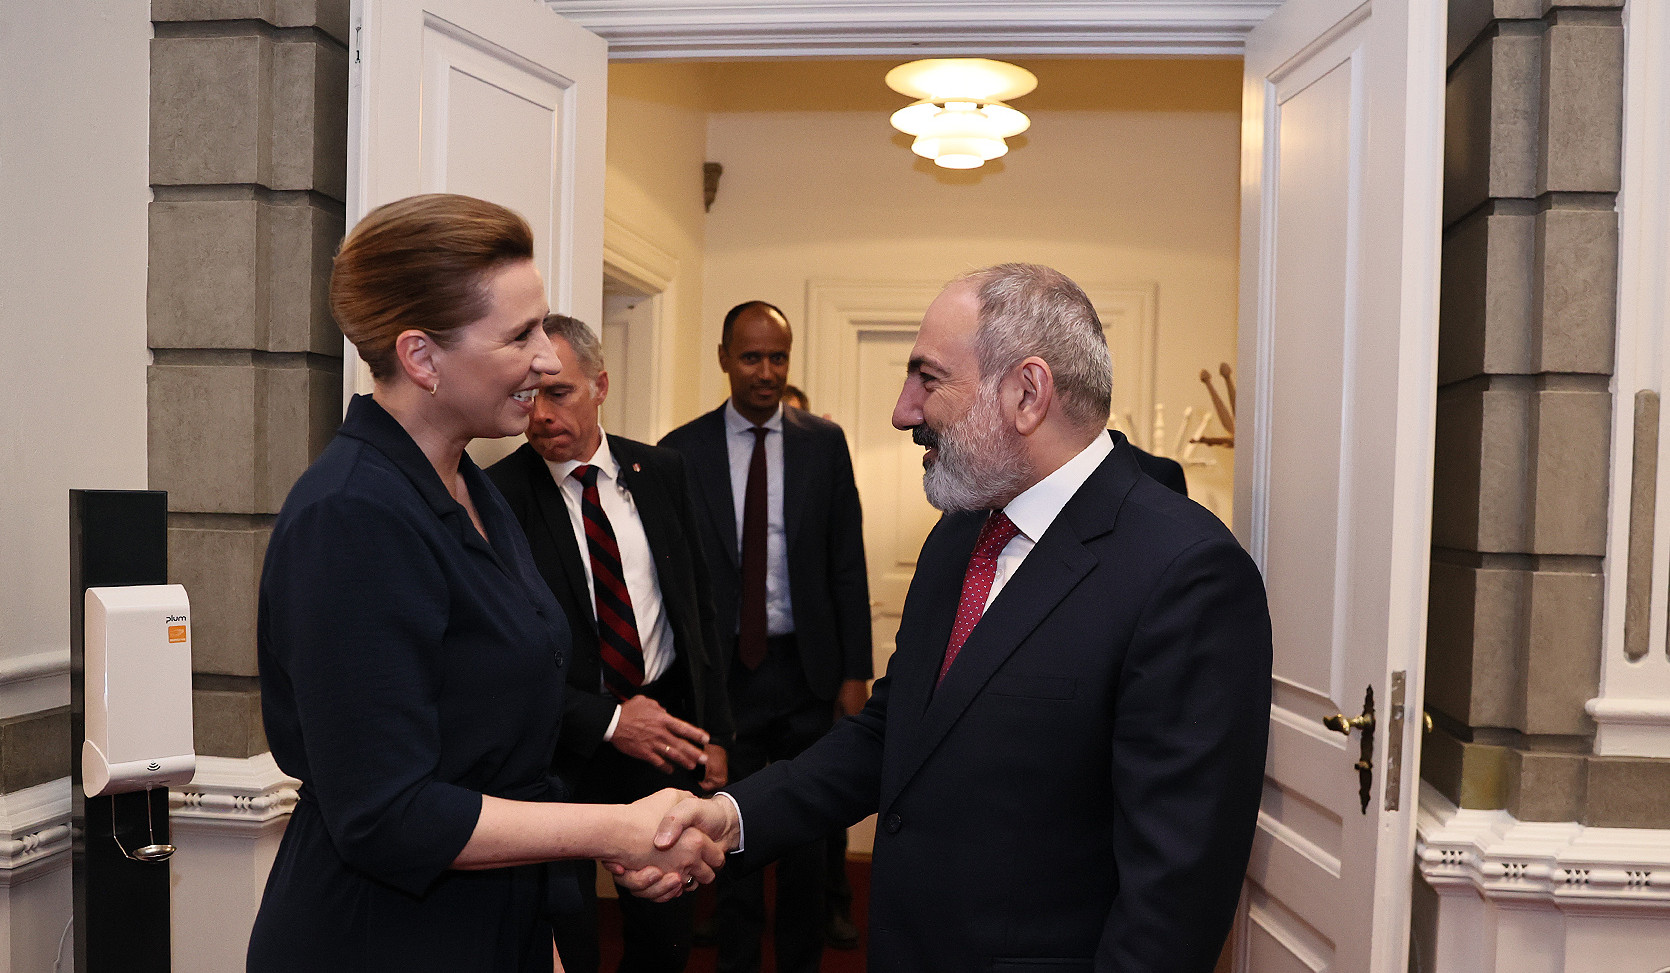 ՀՀ և Դանիայի վարչապետները քննարկել են երկու երկրների բազմաոլորտ համագործակցությանը վերաբերող հարցեր